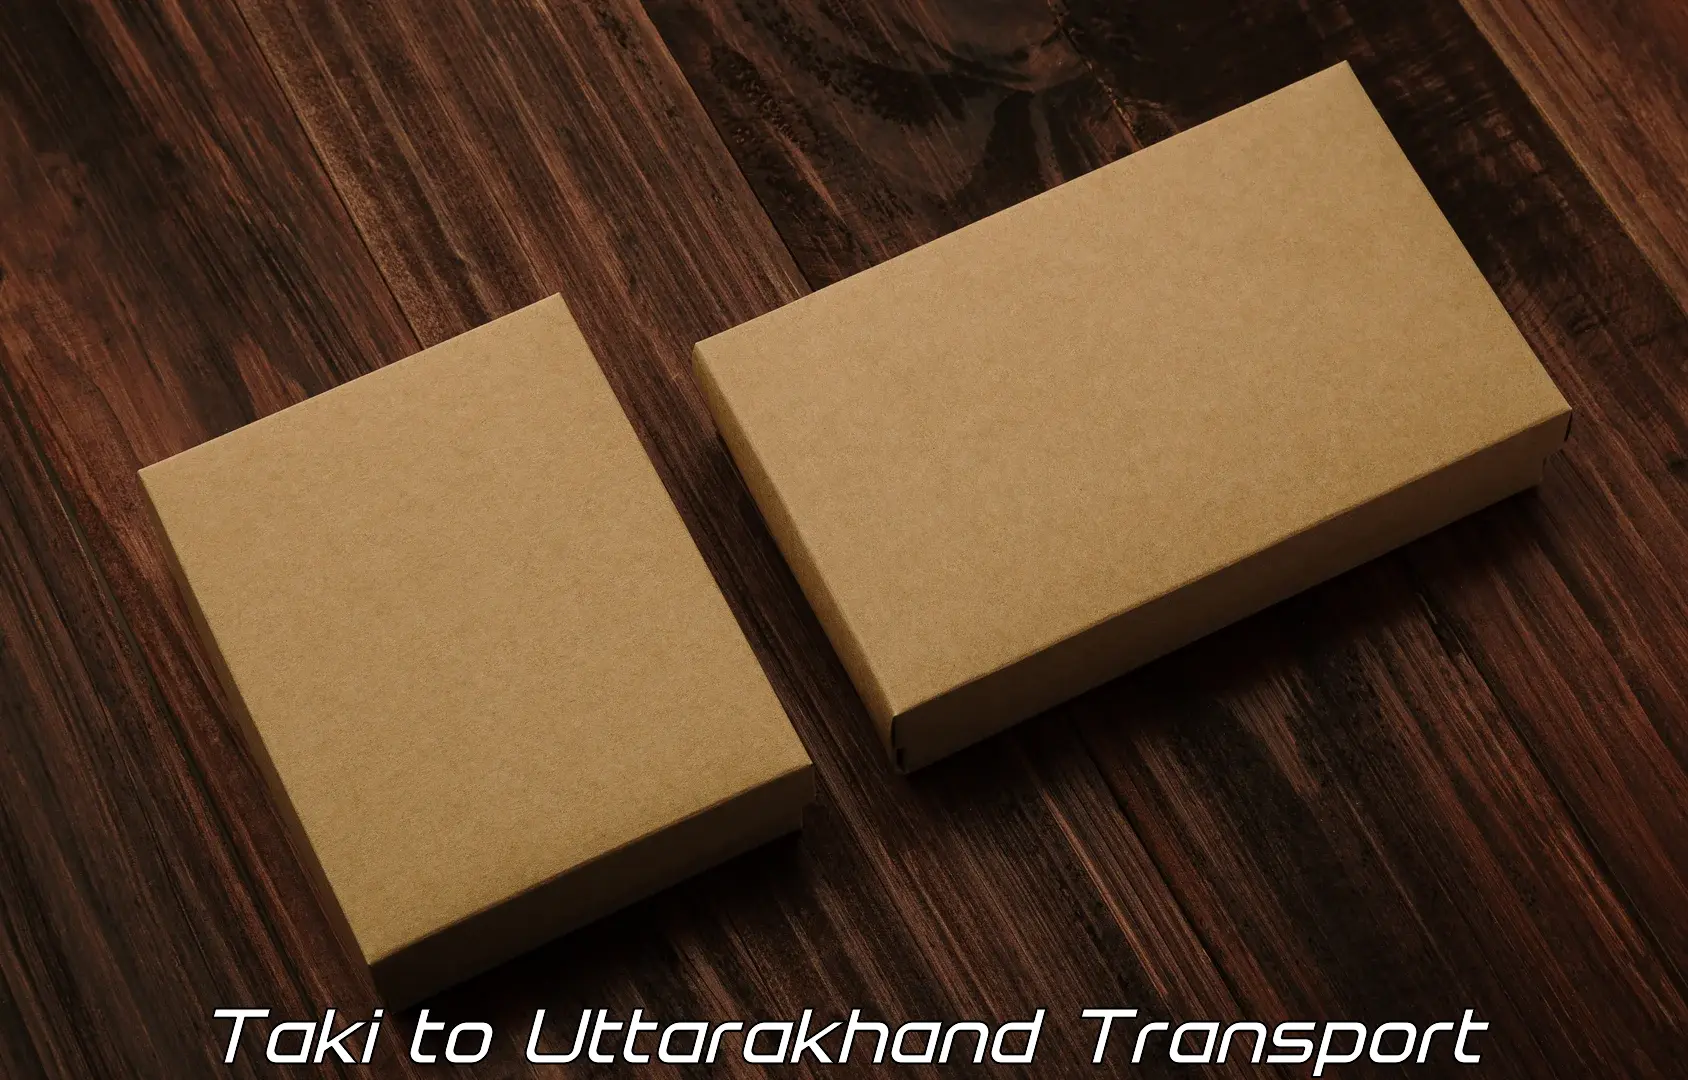 Commercial transport service Taki to Uttarakhand